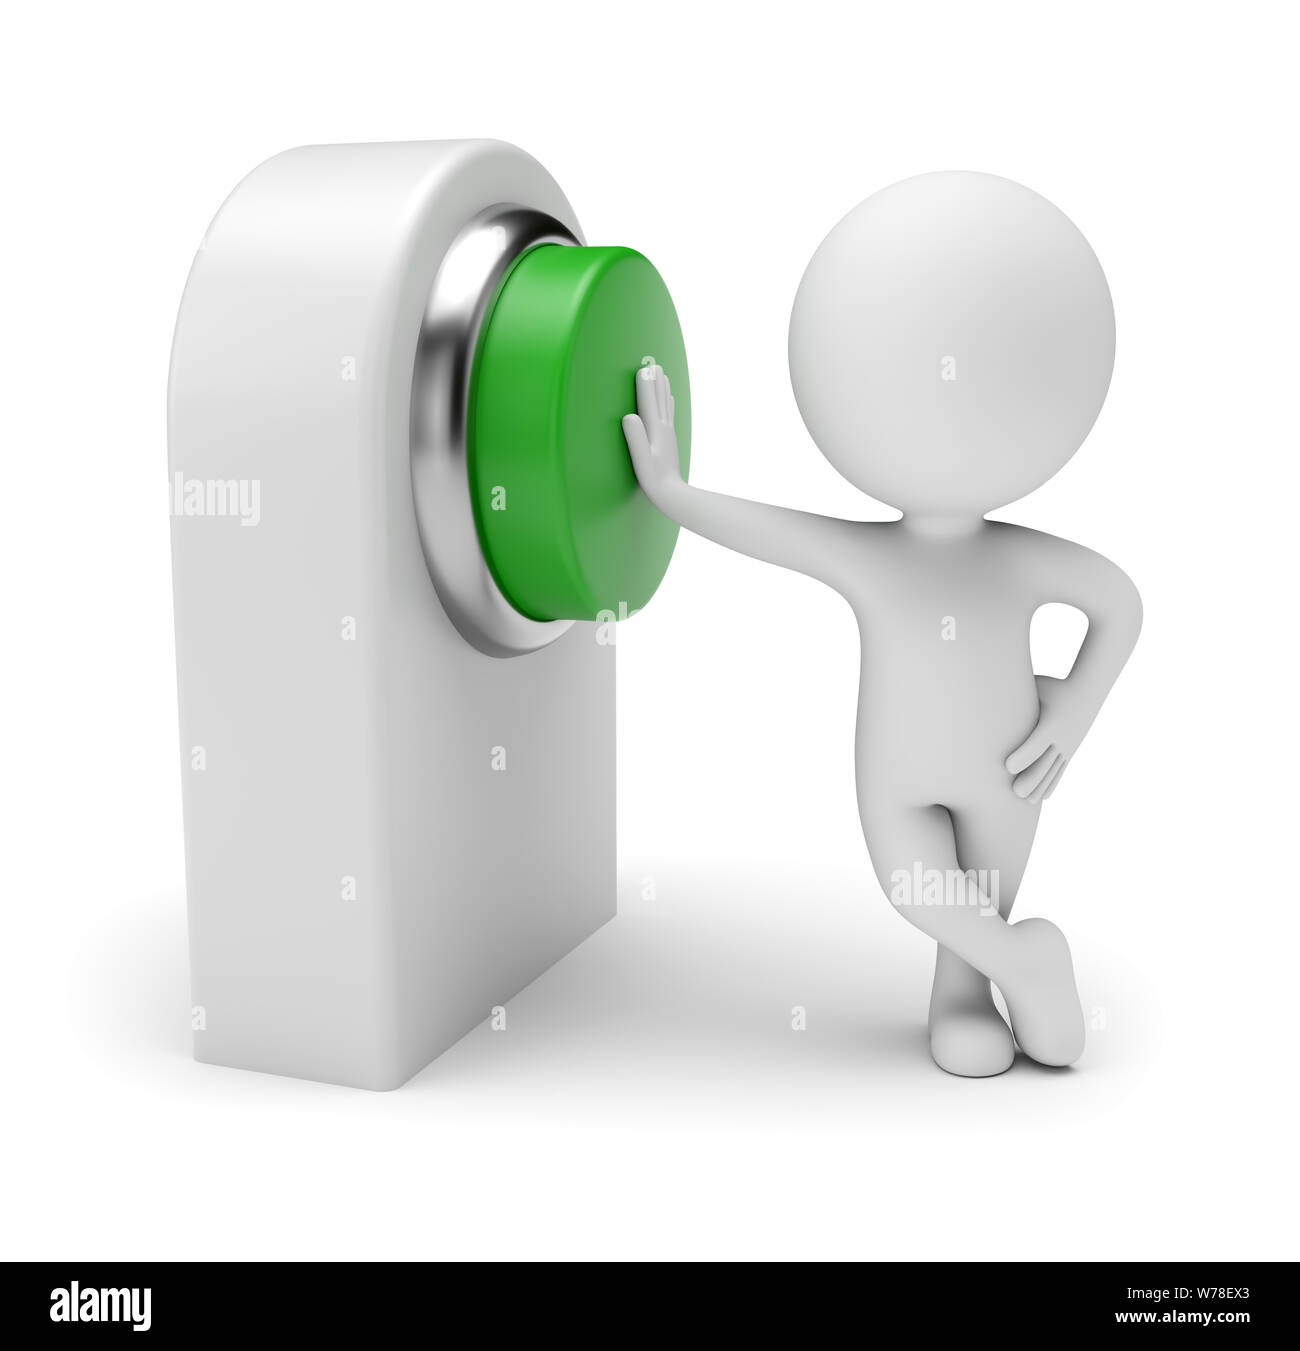 Gente pequeña 3d - pulsando el botón verde en la tarjeta de control. 3D rendering. Aislado sobre fondo blanco. Foto de stock